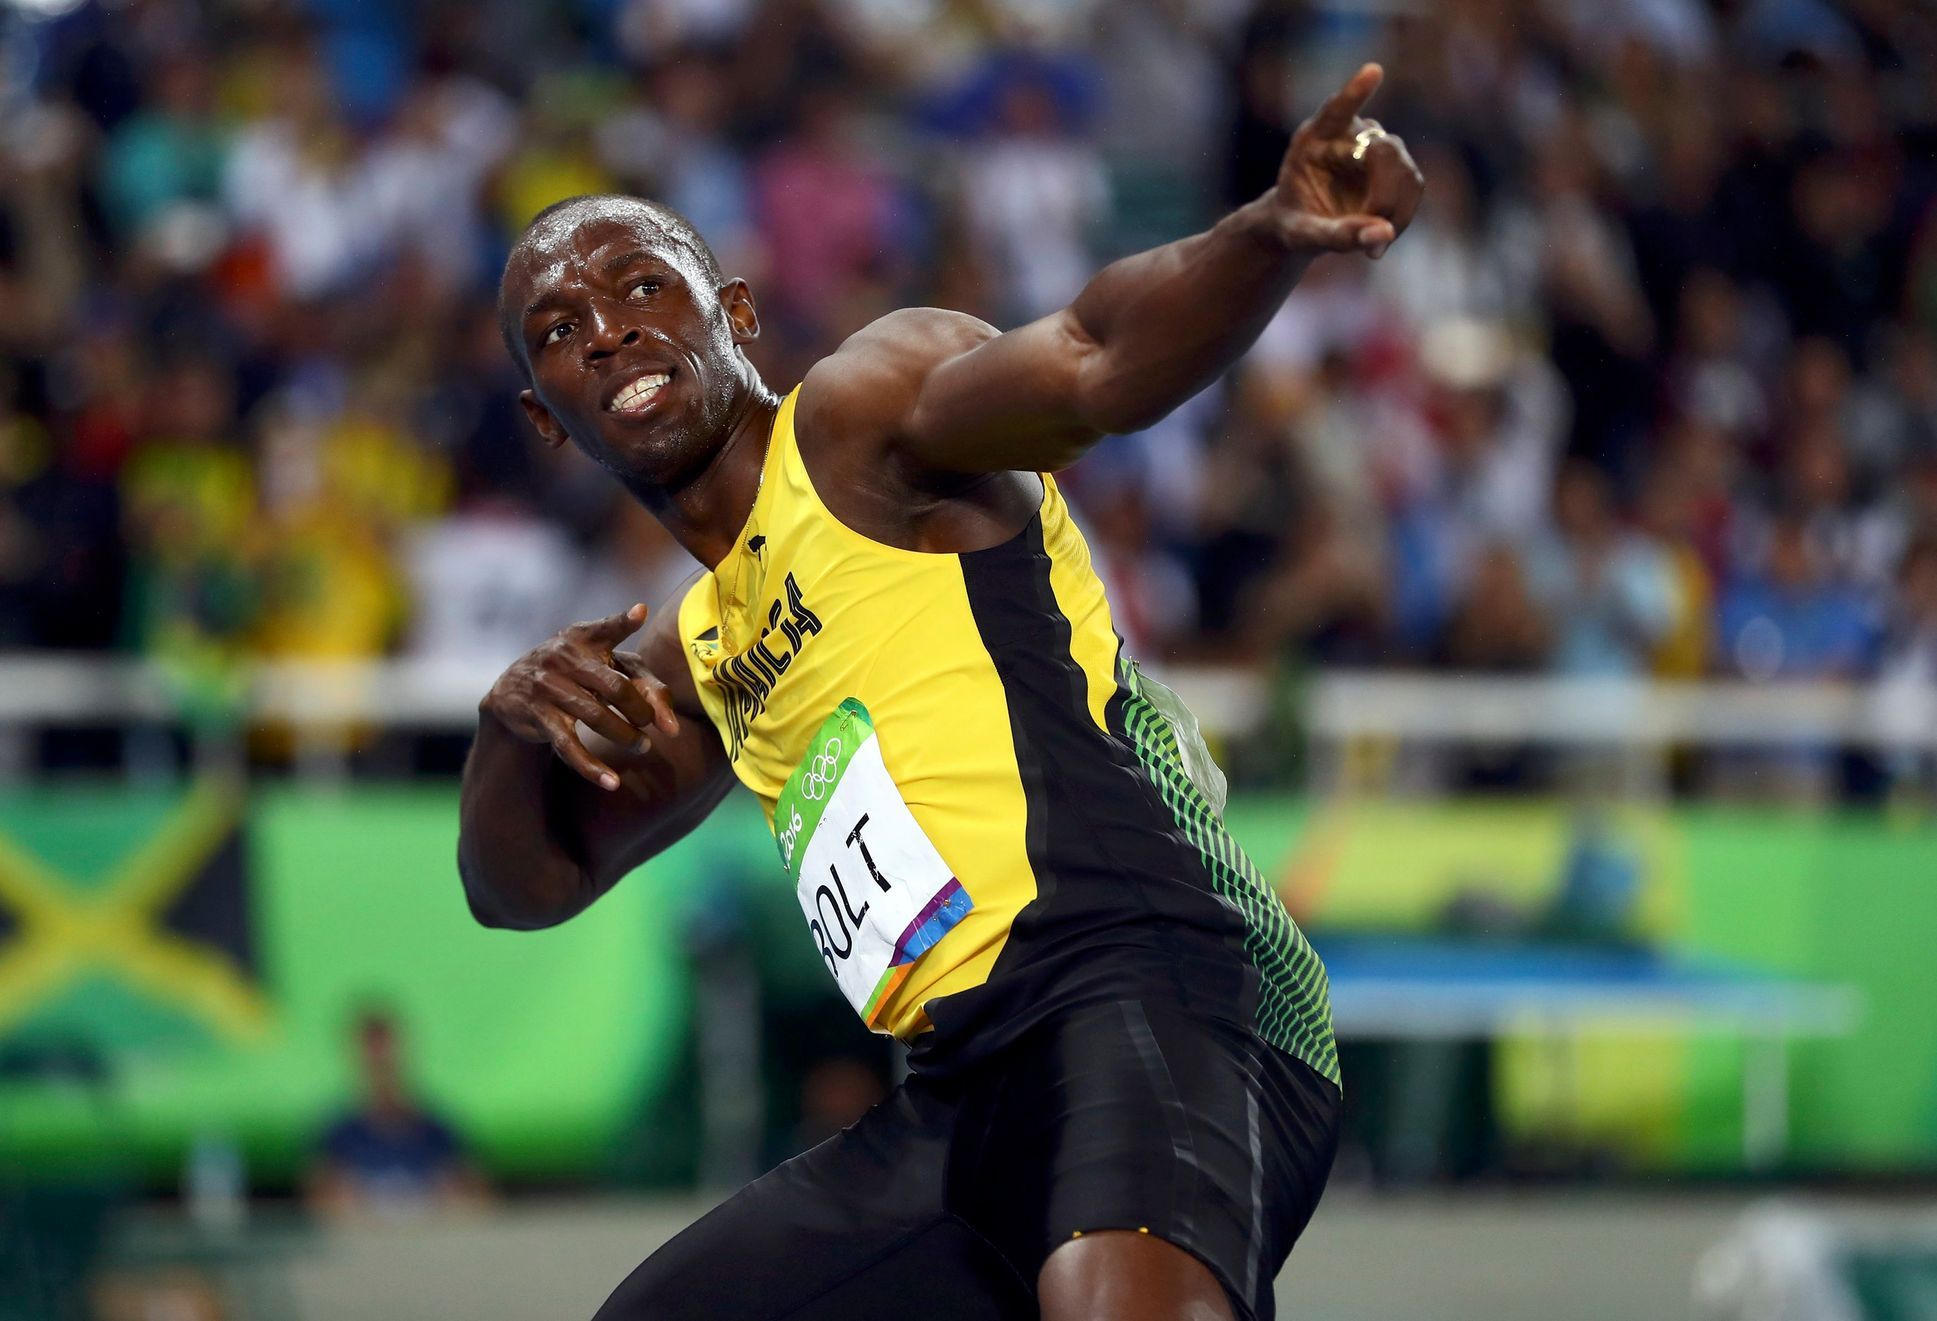 Bolt applies his trademark winning gesture